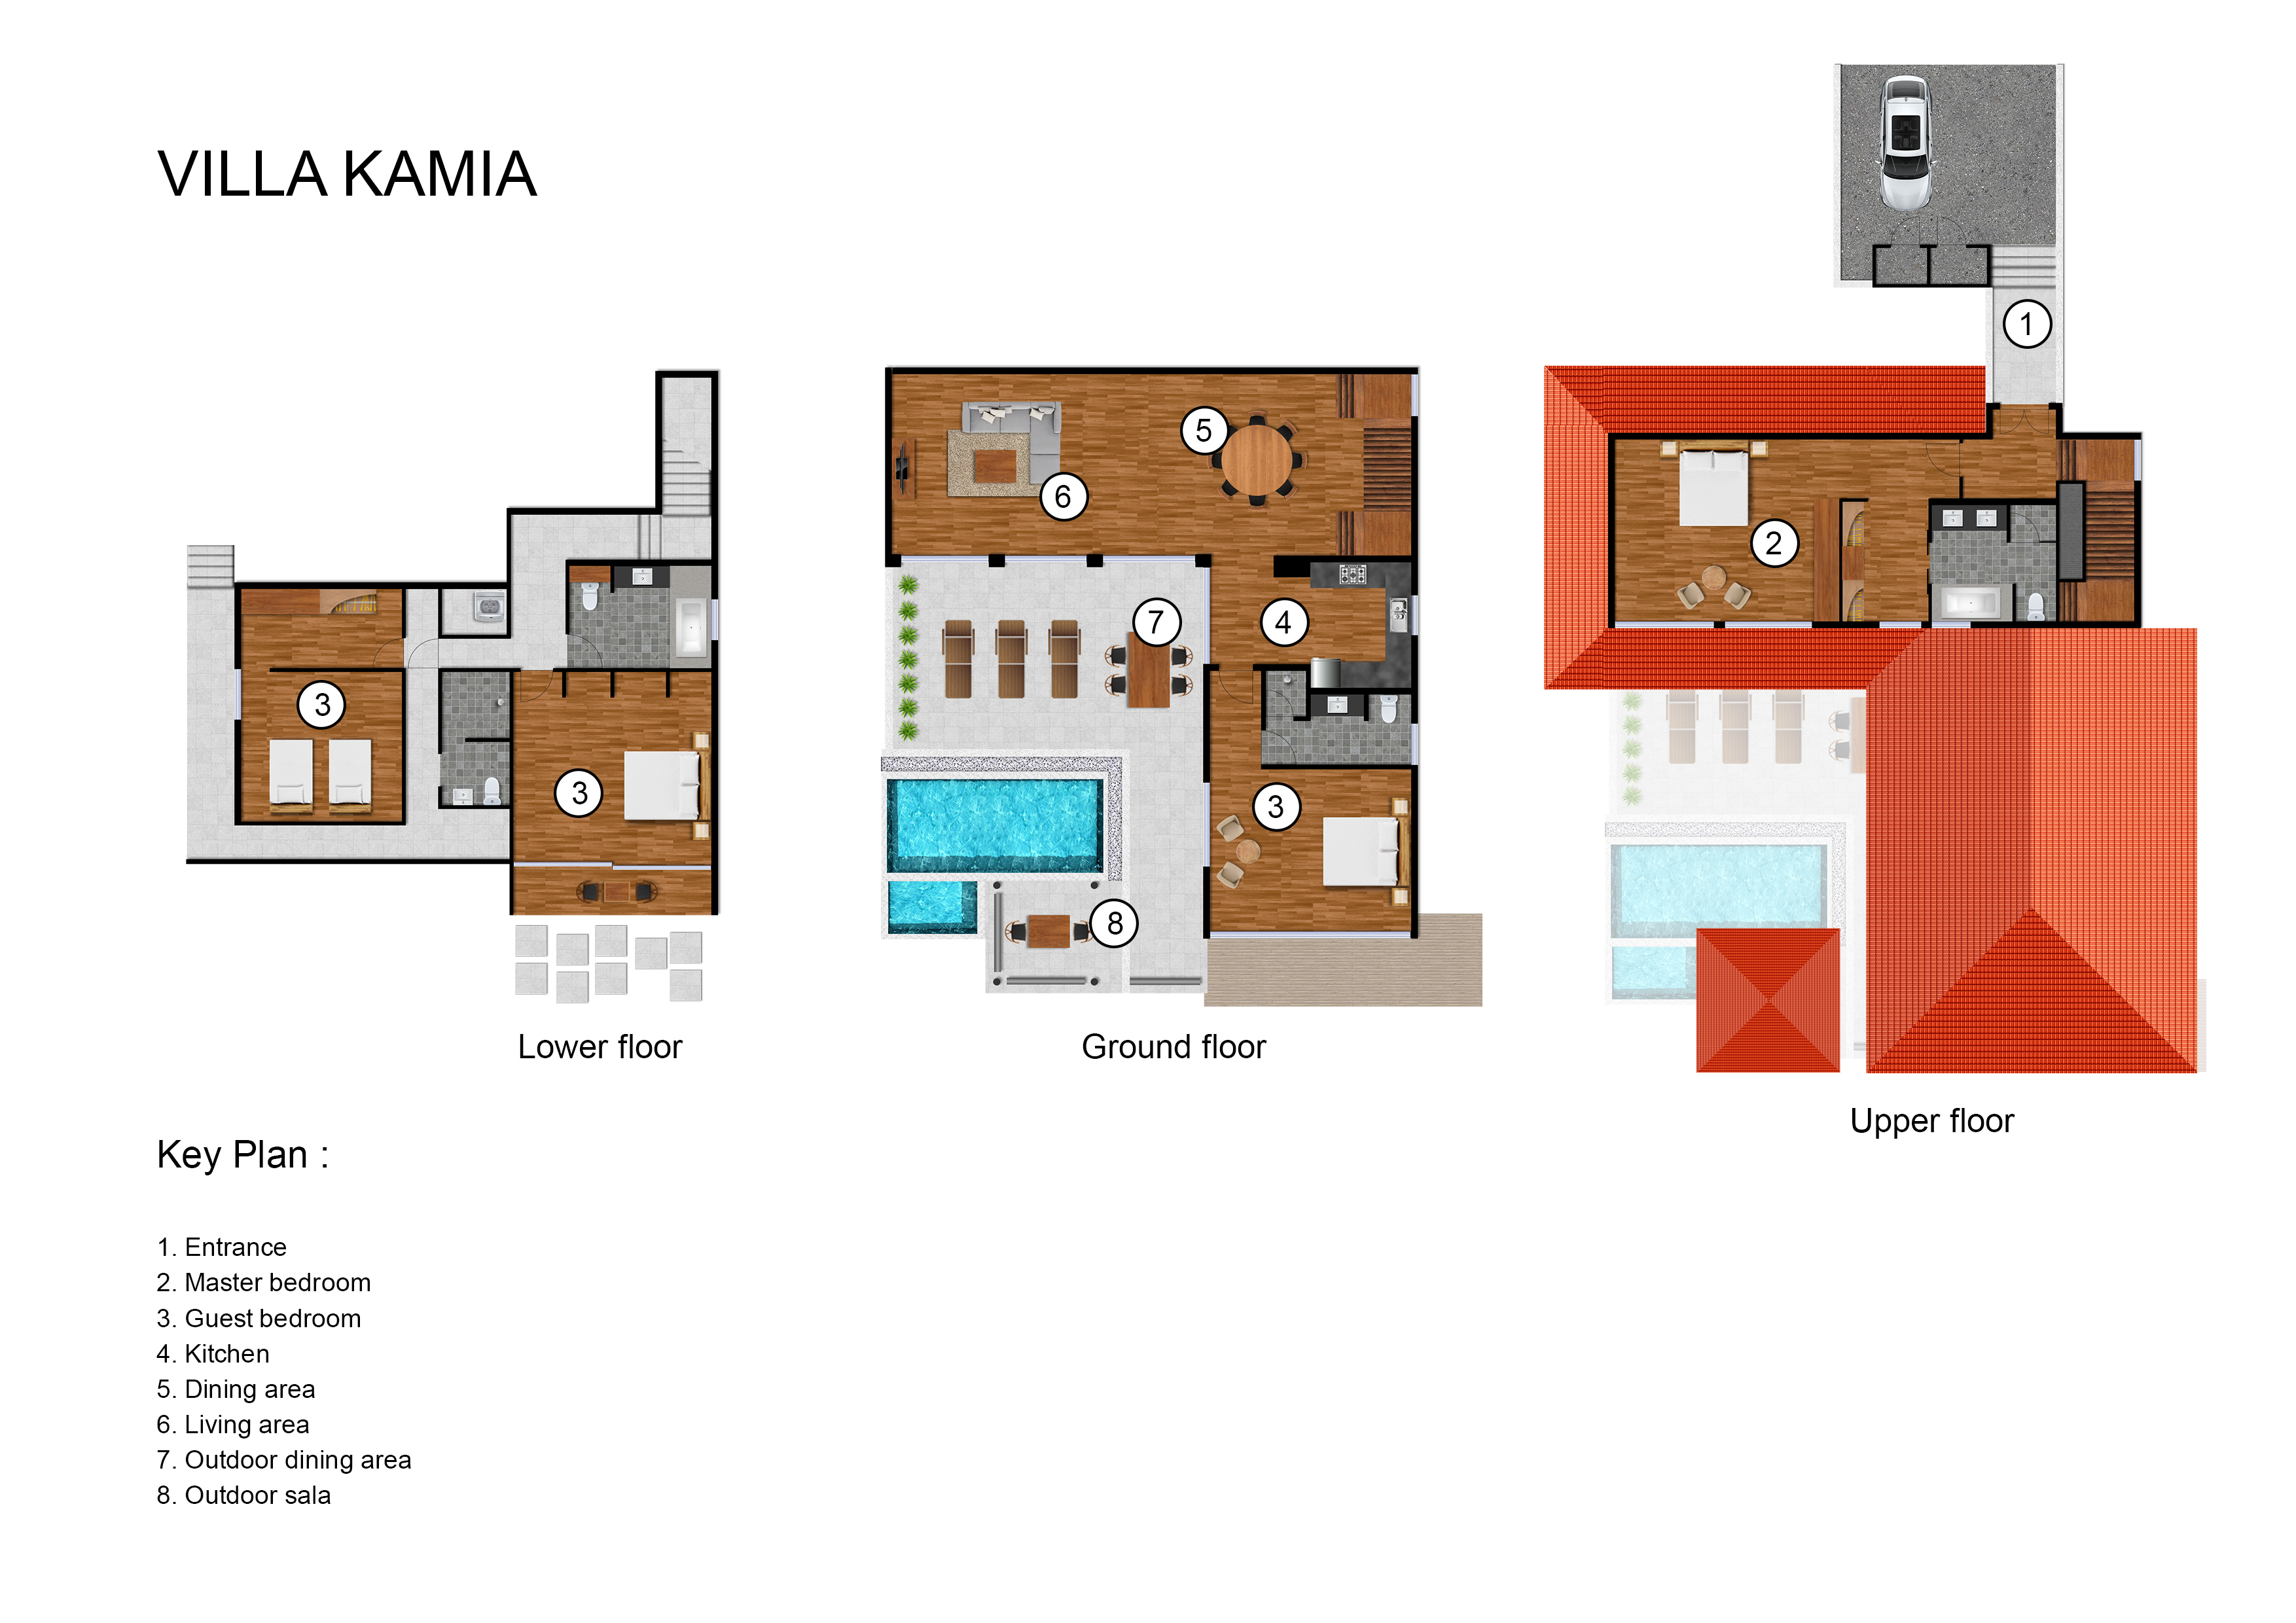 Katamanda - Villa Kamia